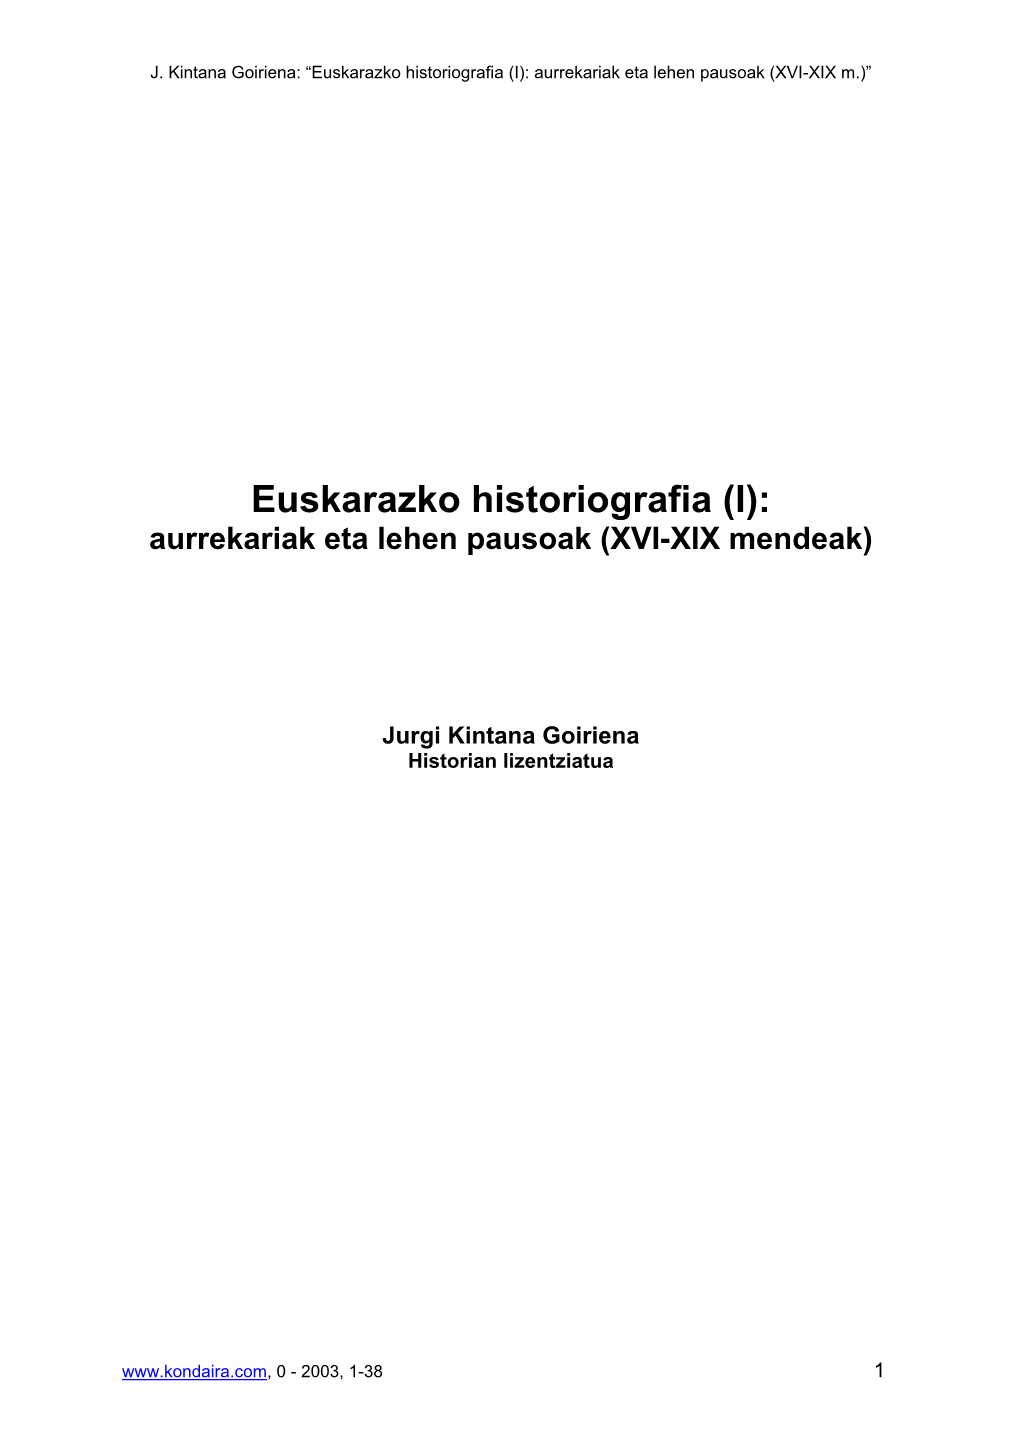 Euskarazko Historiografia (I): Aurrekariak Eta Lehen Pausoak (XVI-XIX M.)”